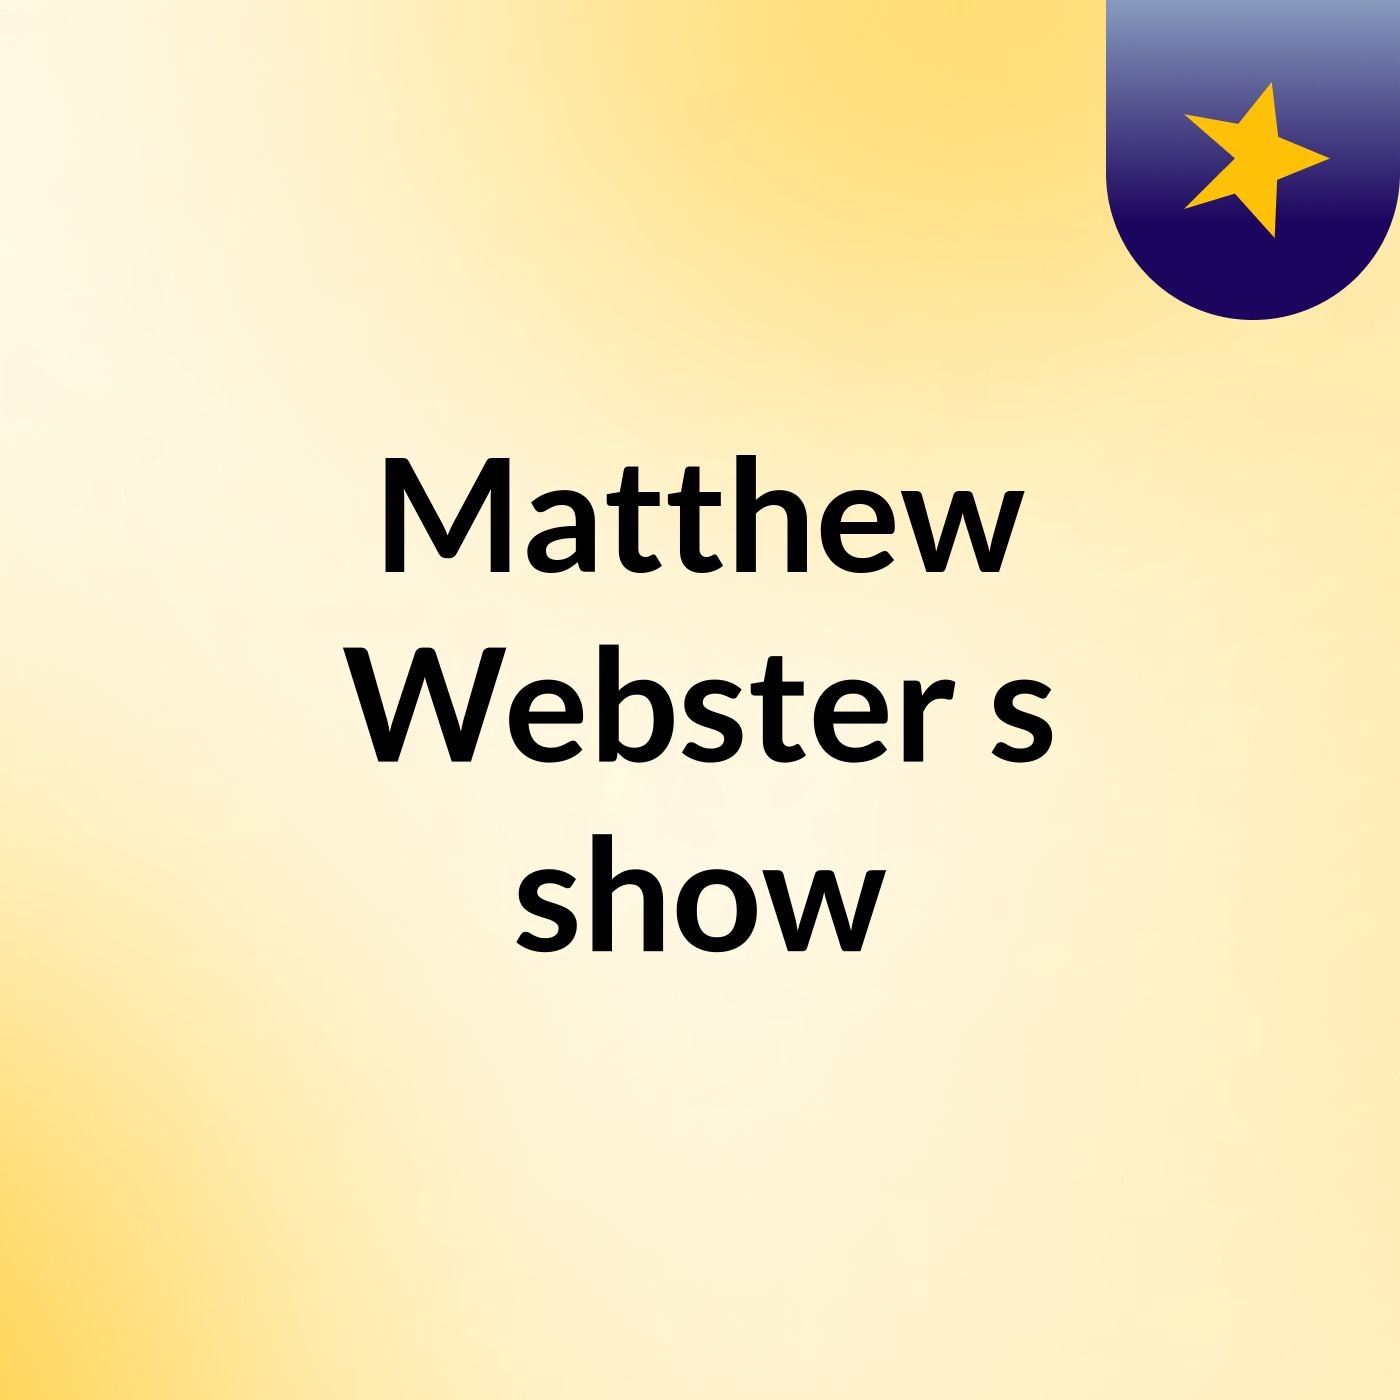 Matthew Webster's show